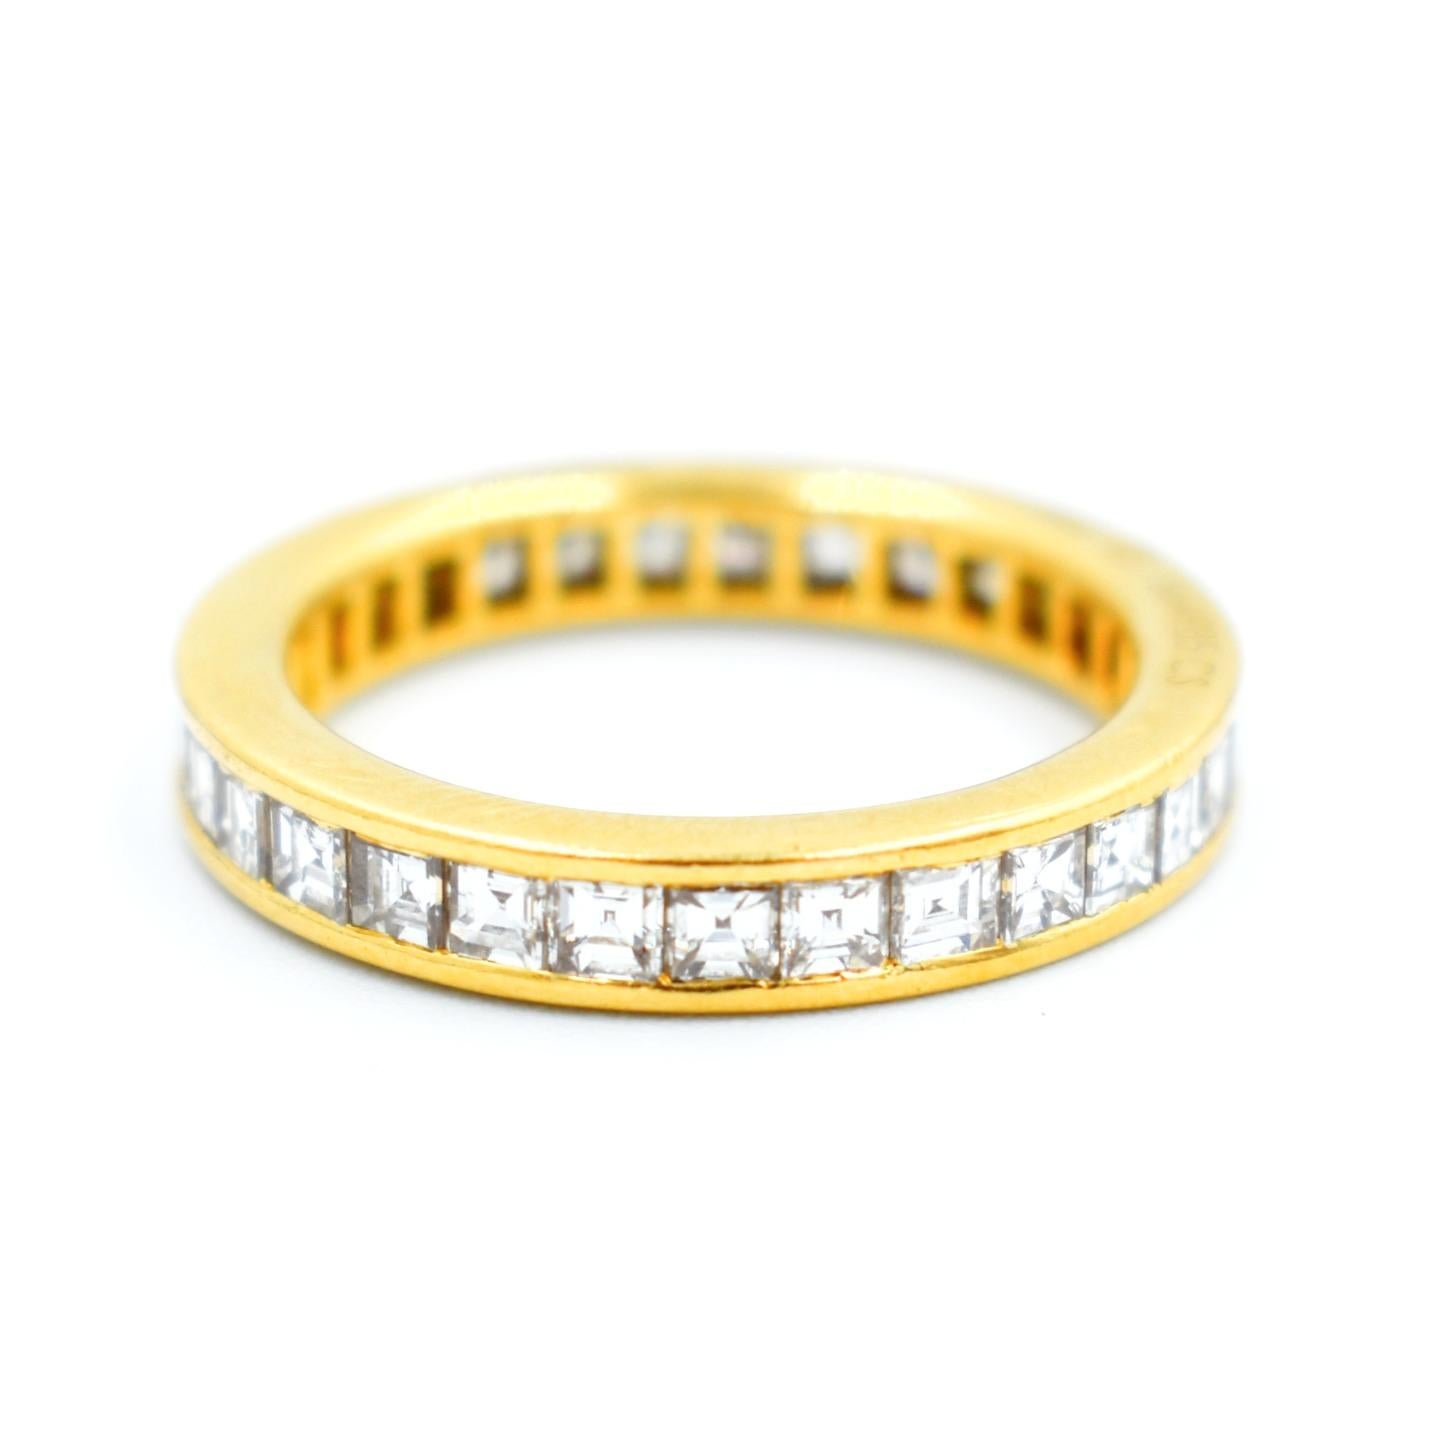 Art Deco Cartier wedding ring 2 carat diamonds princess cut